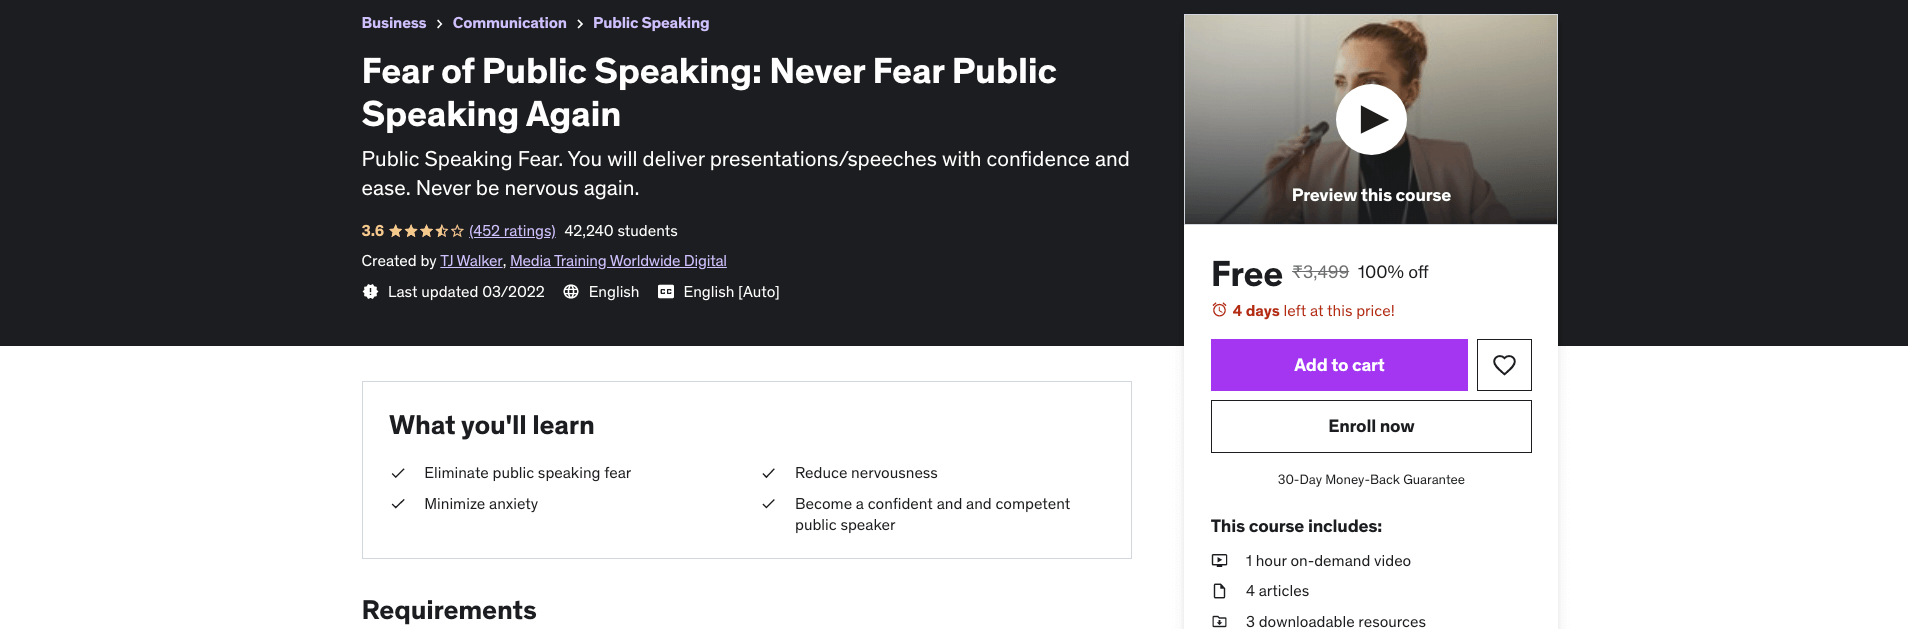 Fear of Public Speaking: Never Fear Public Speaking Again